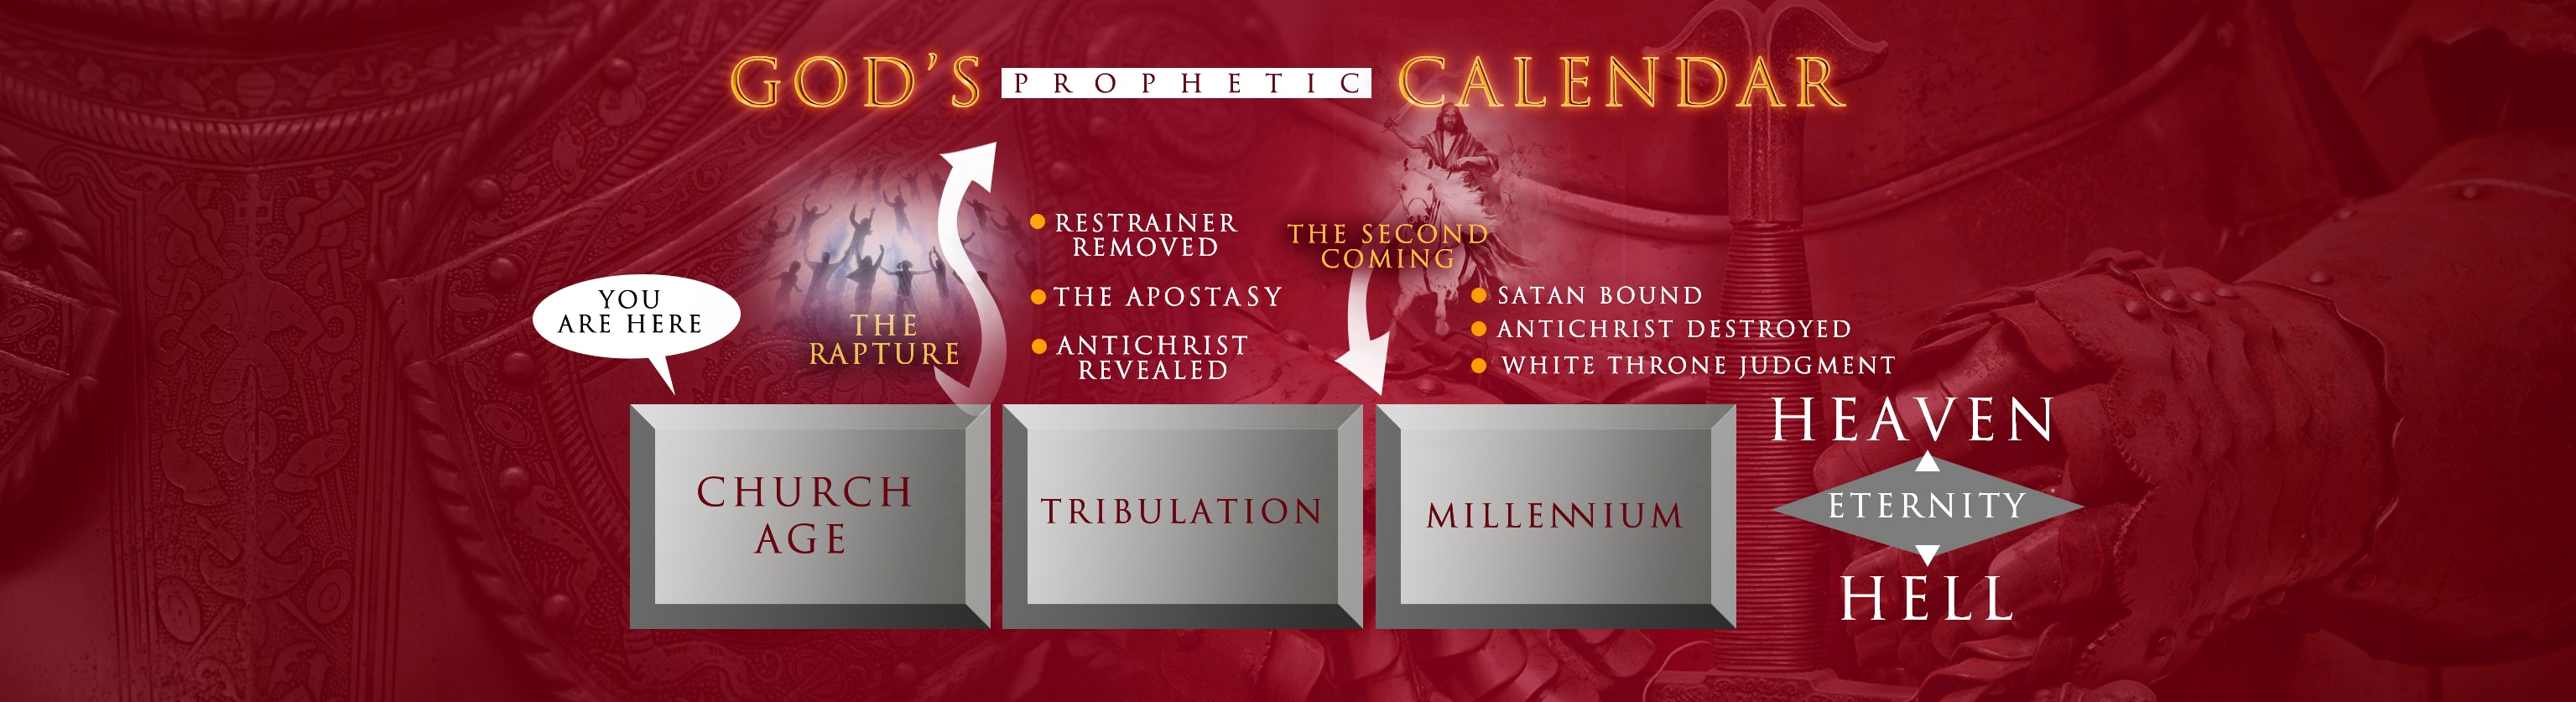 God's prophetic timeline